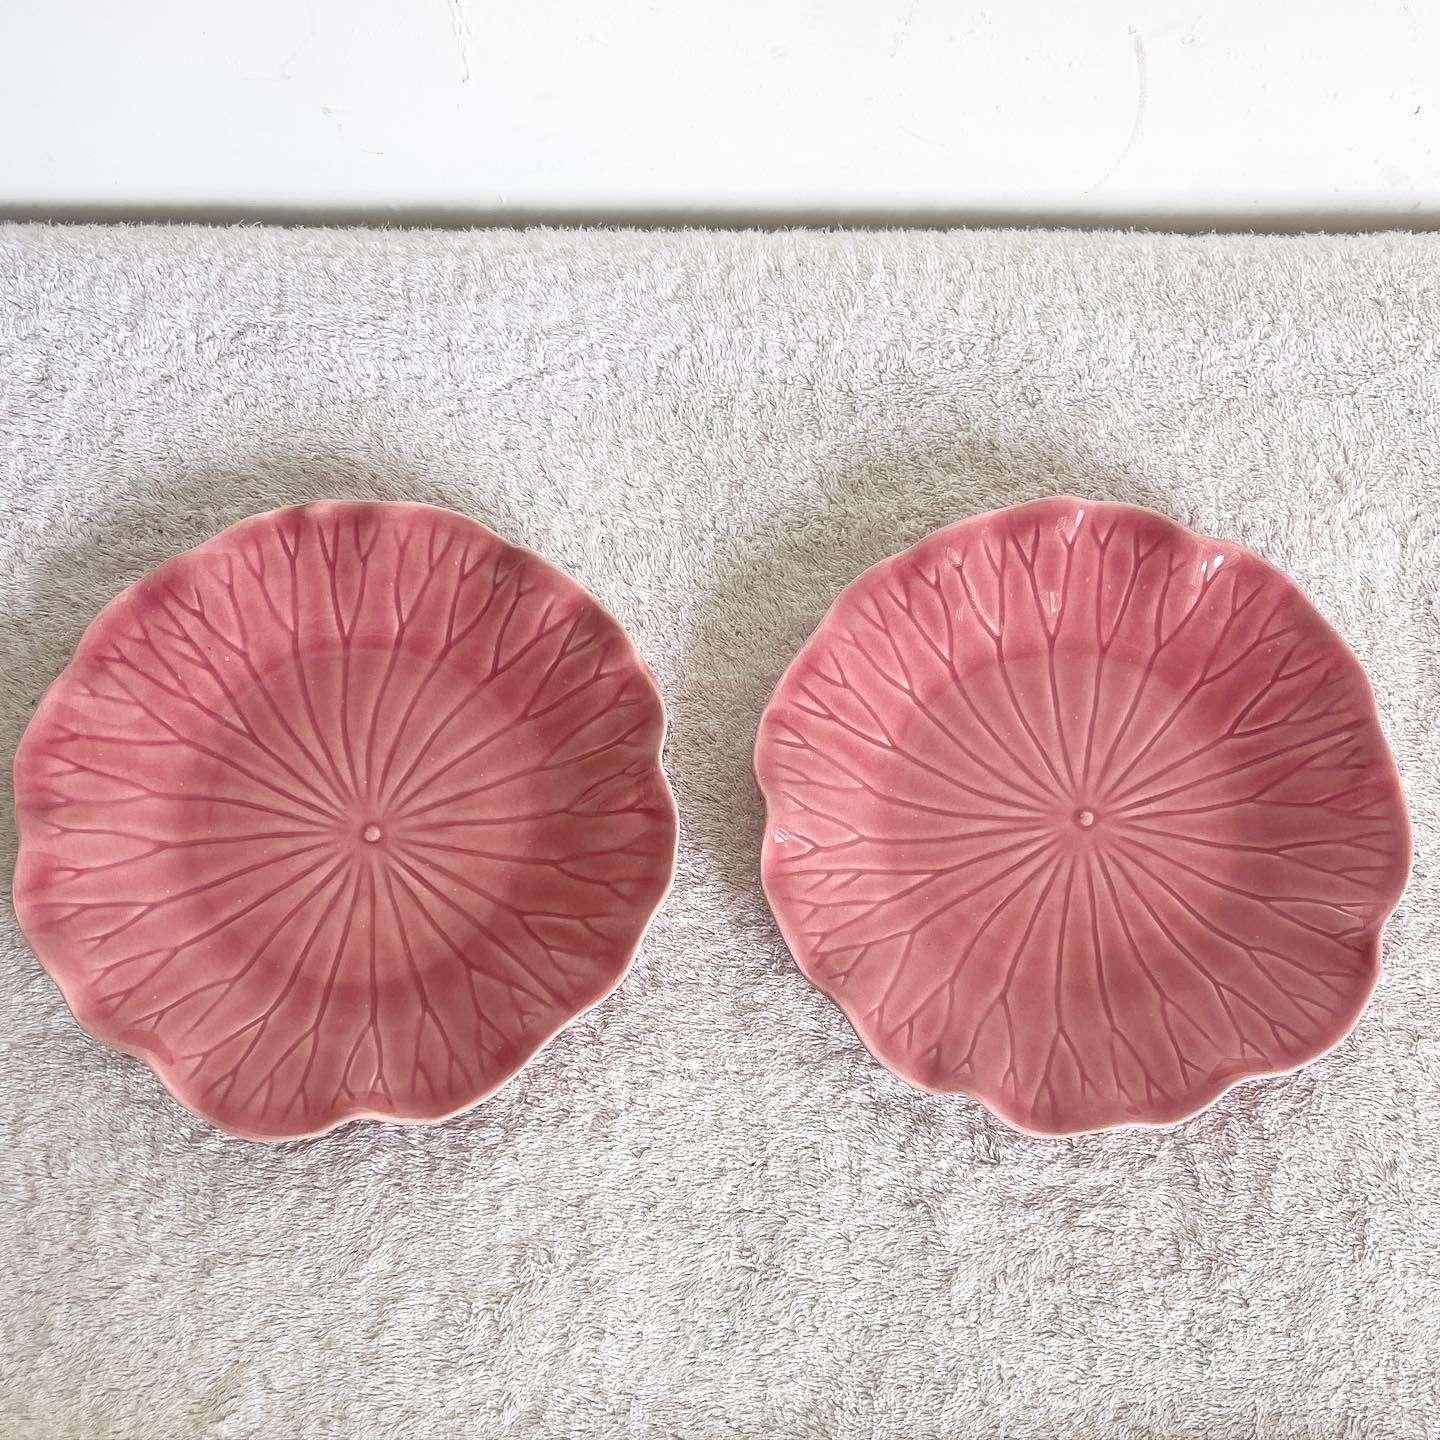 Élevez votre table avec cette paire exceptionnelle d'assiettes Metlox Poppytrail Lotus rose vintage. Fabriquées avec soin, ces assiettes dégagent une élégance et un charme intemporels.

Exceptionnelle paire d'assiettes Metlox Poppytrail Lotus rose